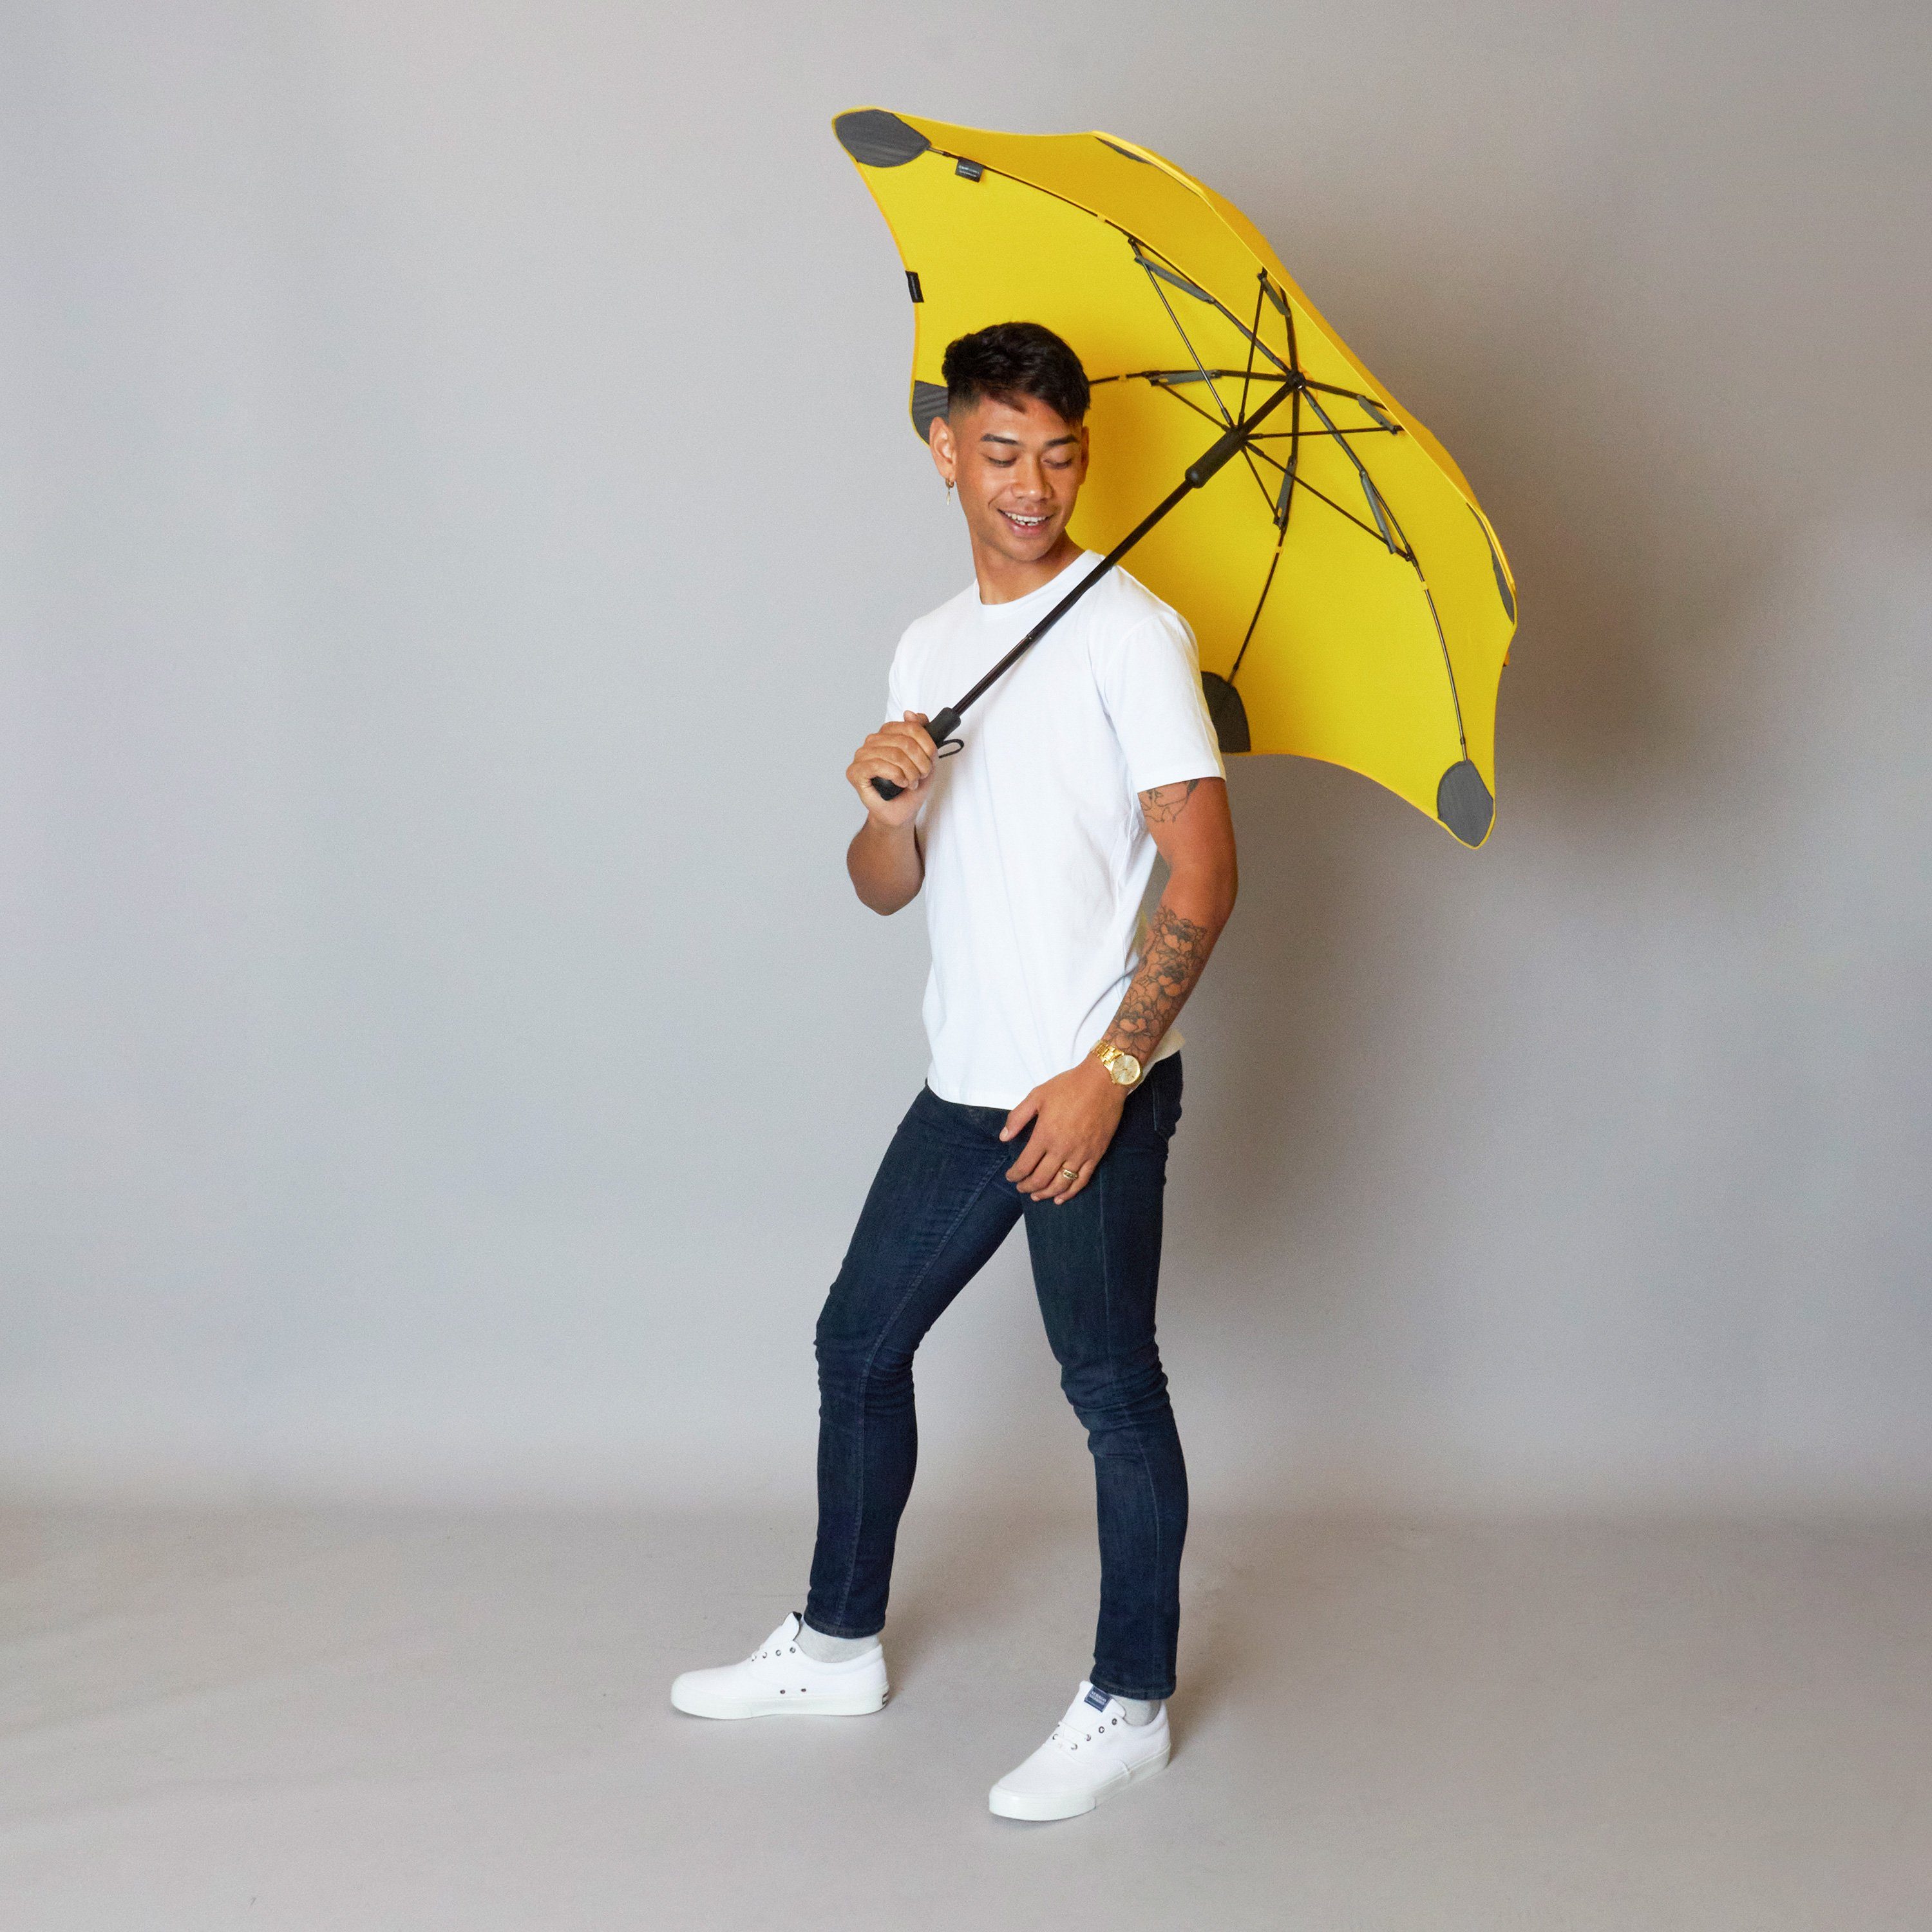 Classic, Technologie, patentierte herausragende Stockregenschirm einzigartige Silhouette gelb Blunt